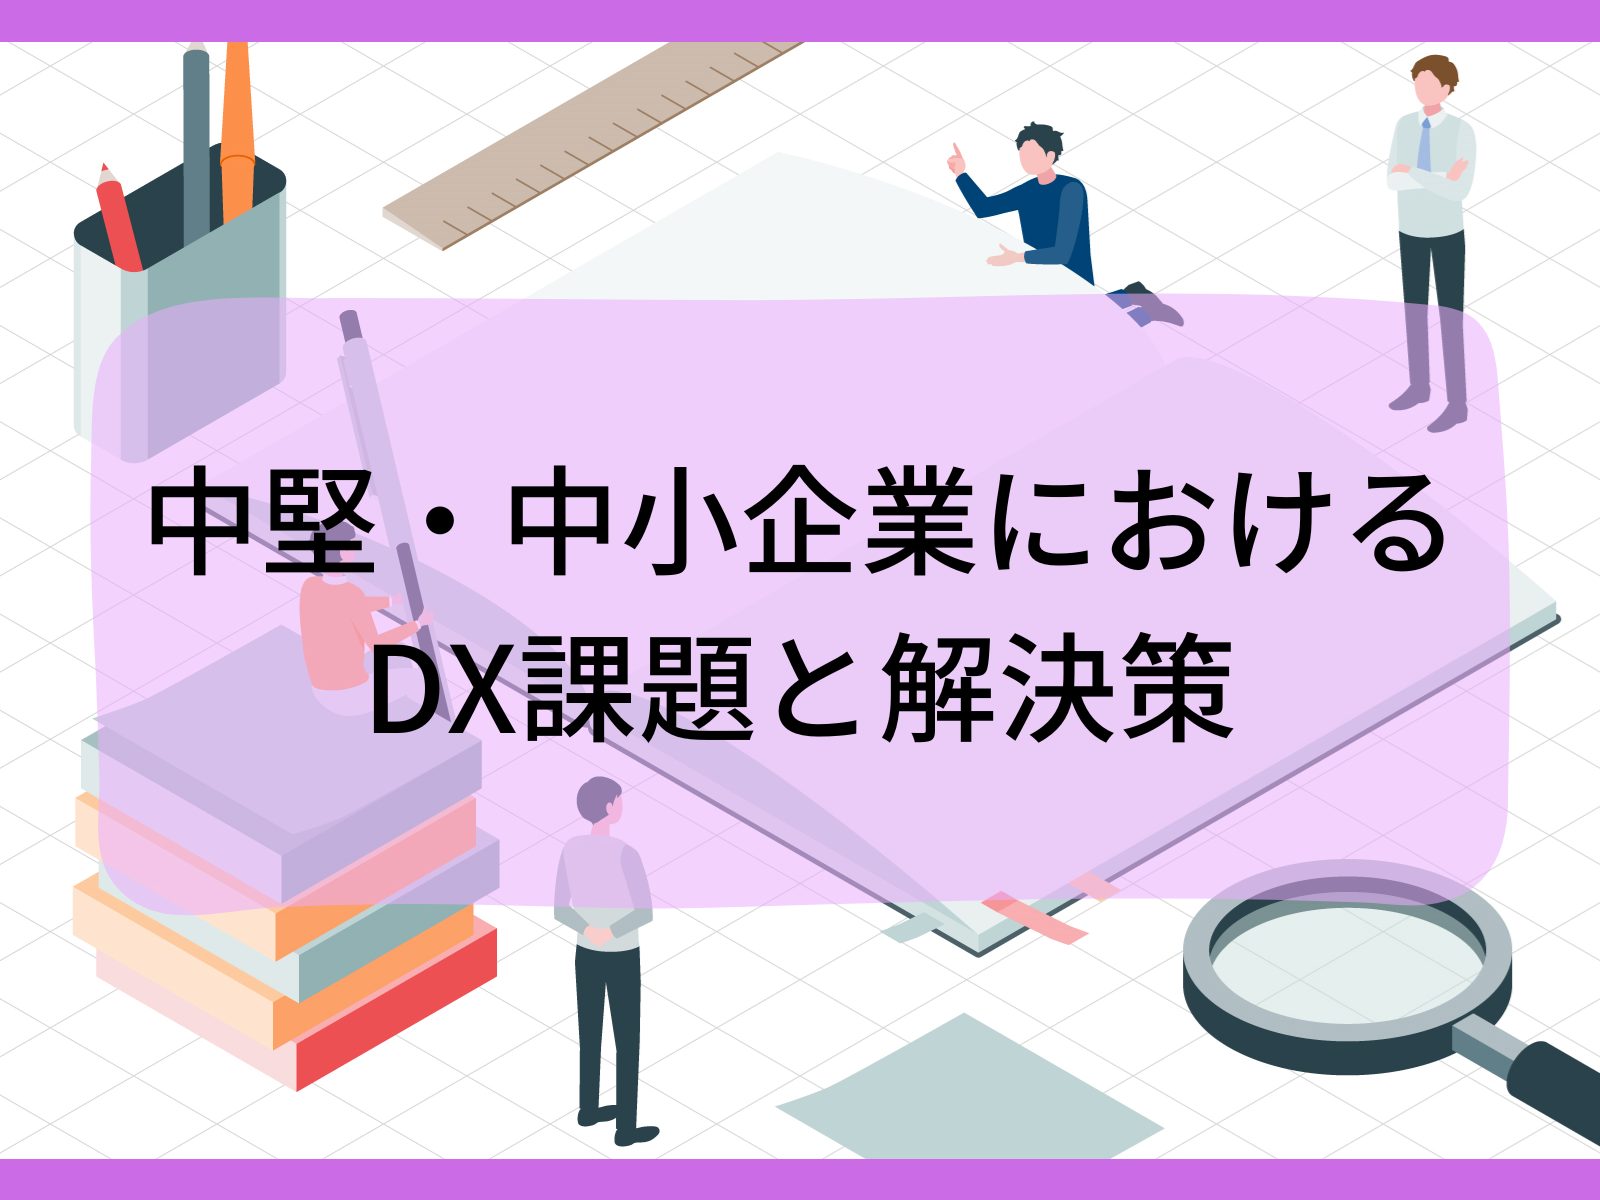 中堅・中小企業におけるDX課題と解決策